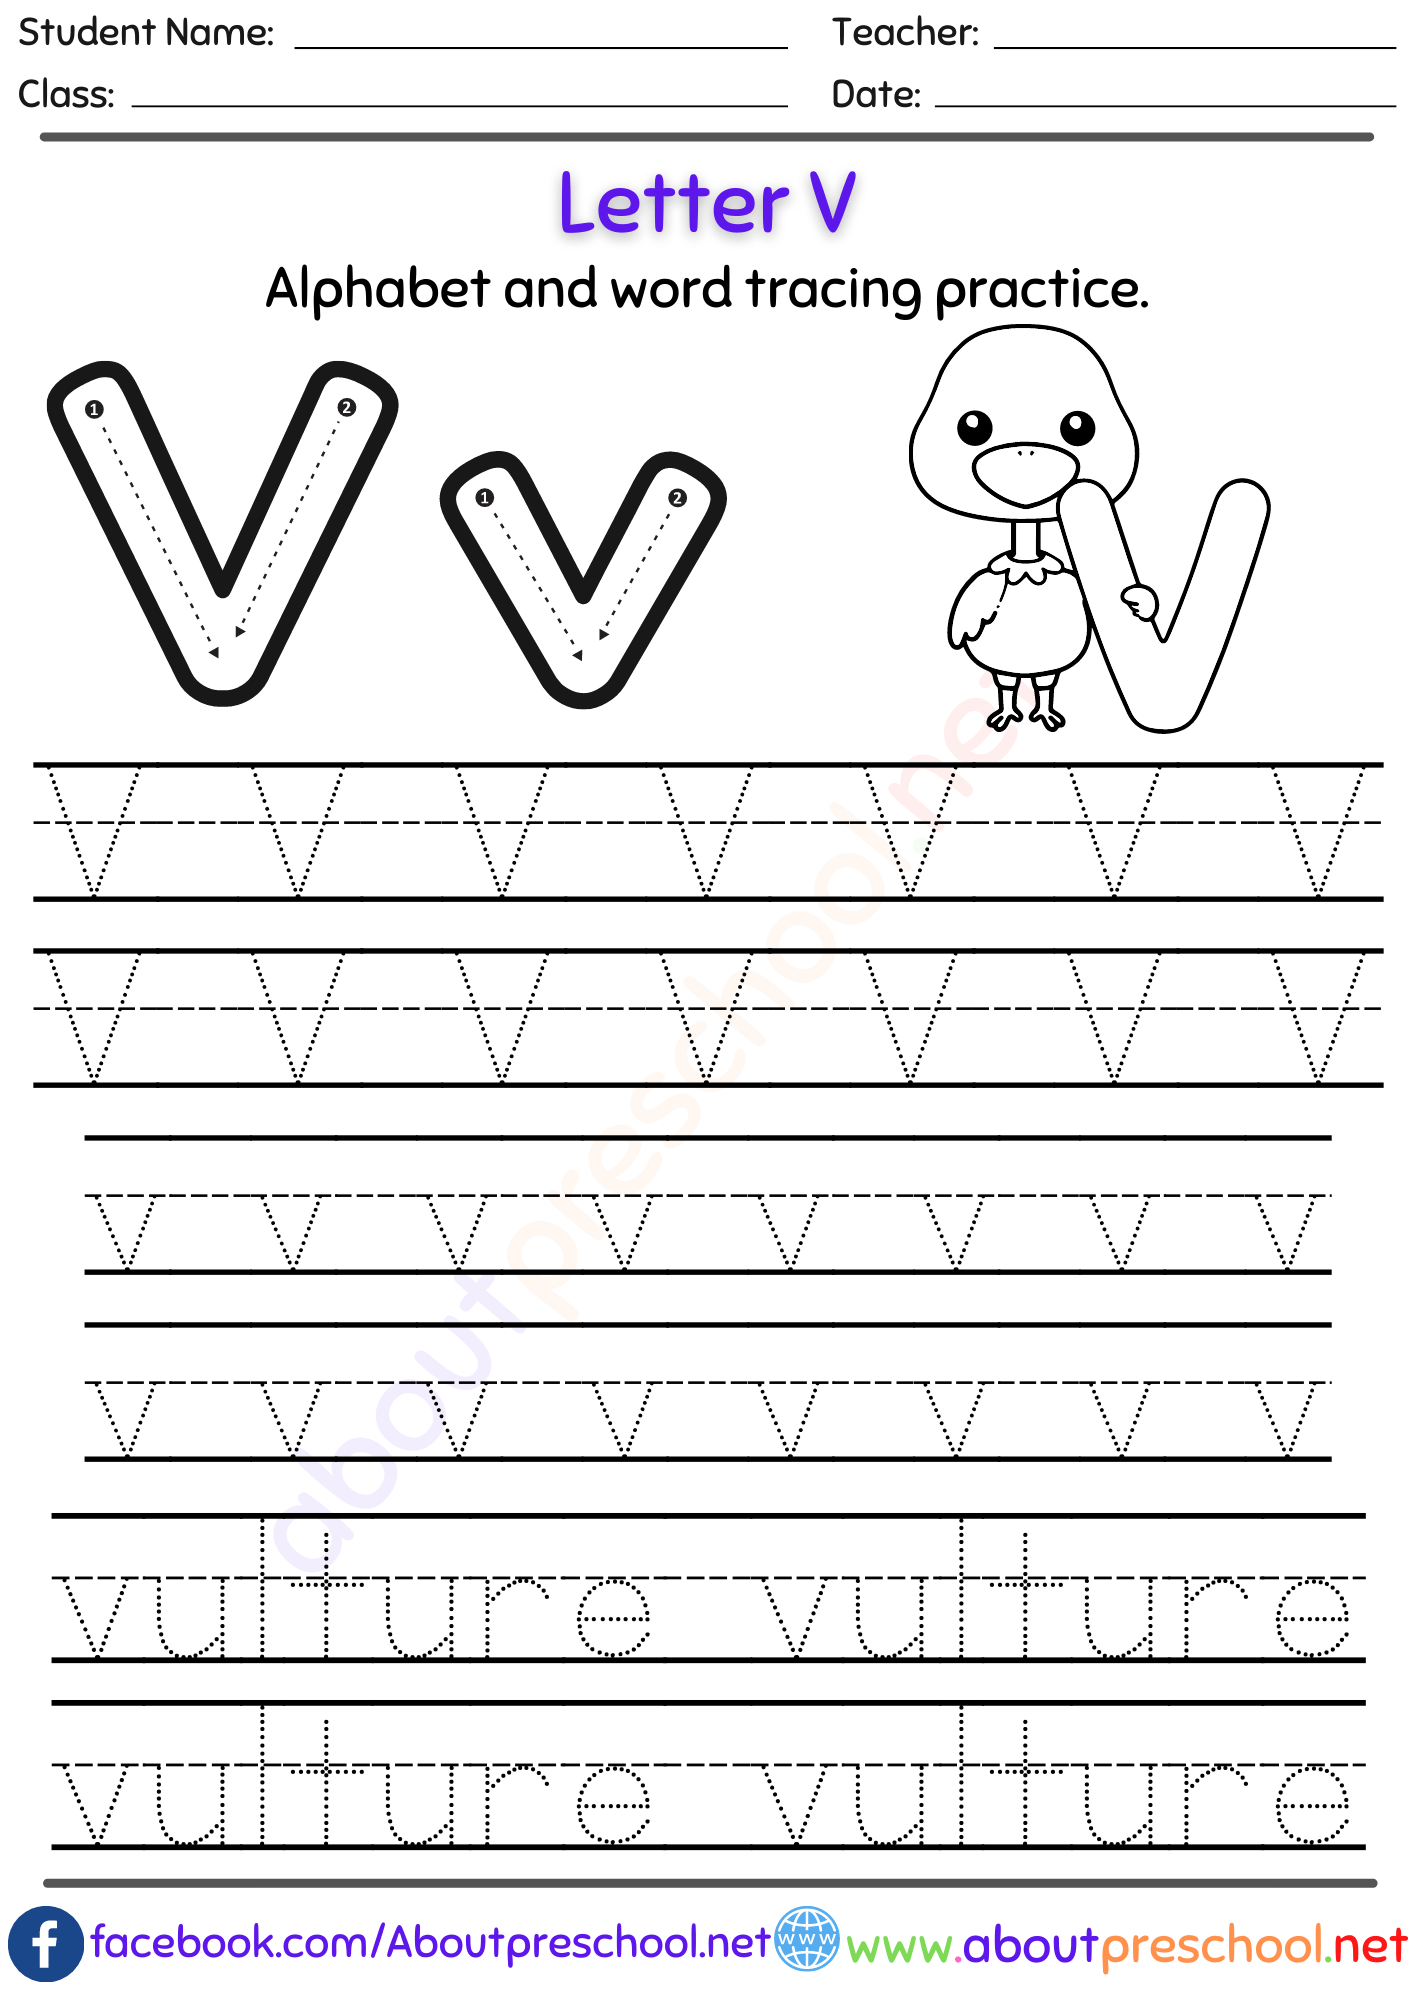 Free Letter V Alphabet tracing worksheets